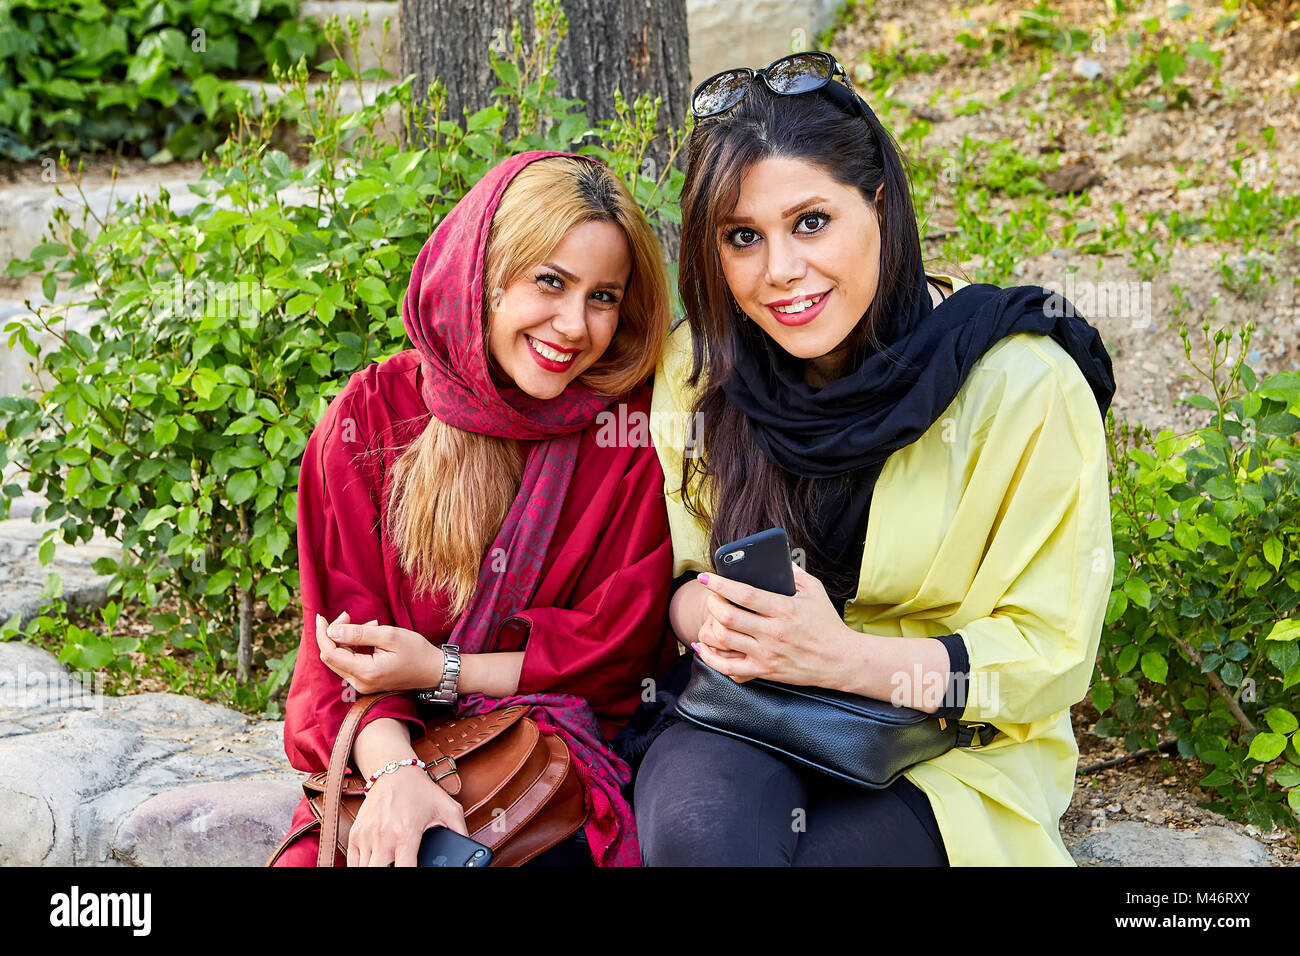 Téhéran, Iran - 28 Avril 2017 : deux femmes iraniennes en voile religieux  sont assis dans le parc et de sourire Photo Stock - Alamy